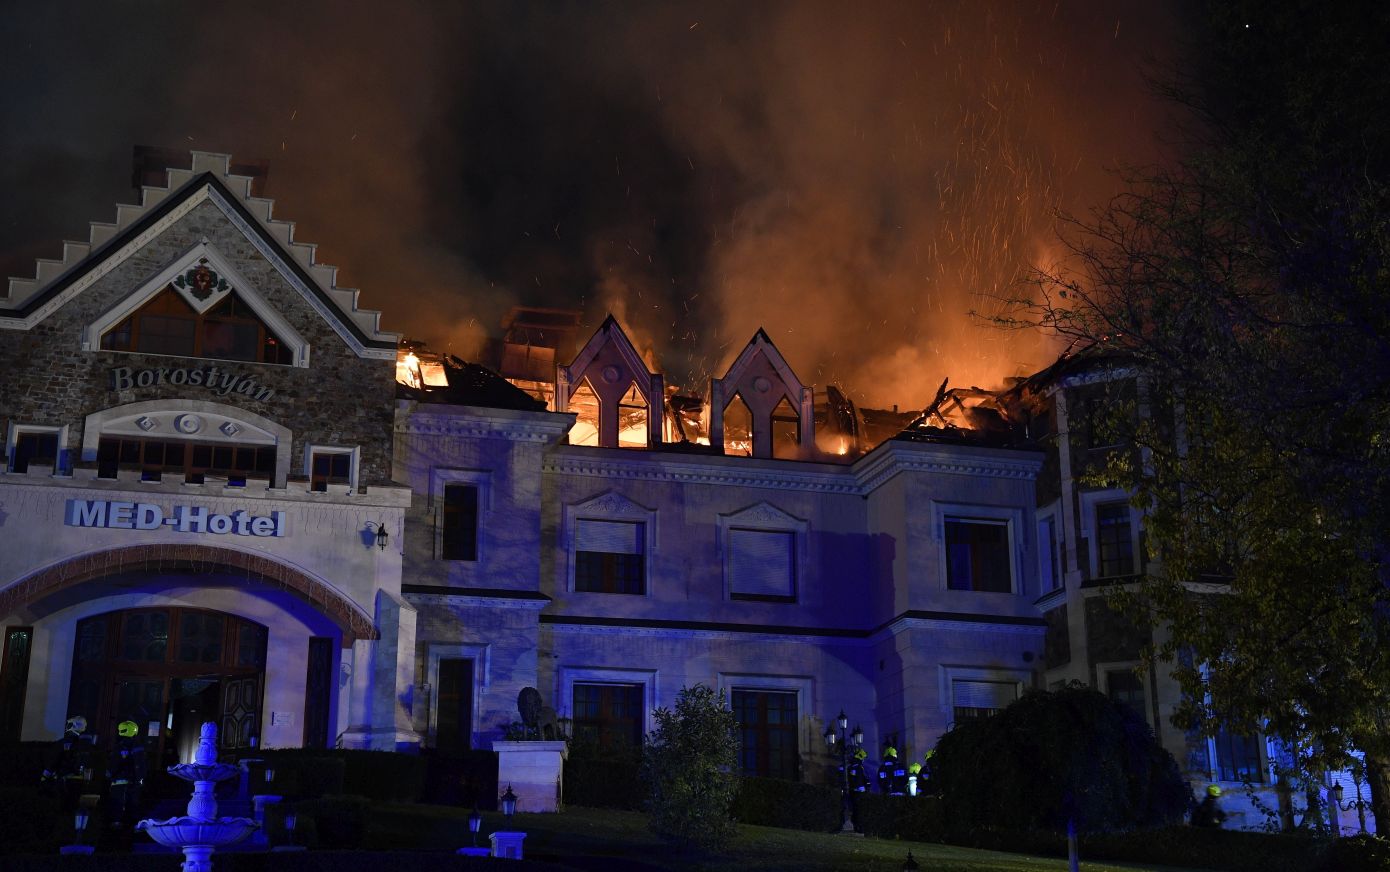 Borostyán Med Hotel tűz